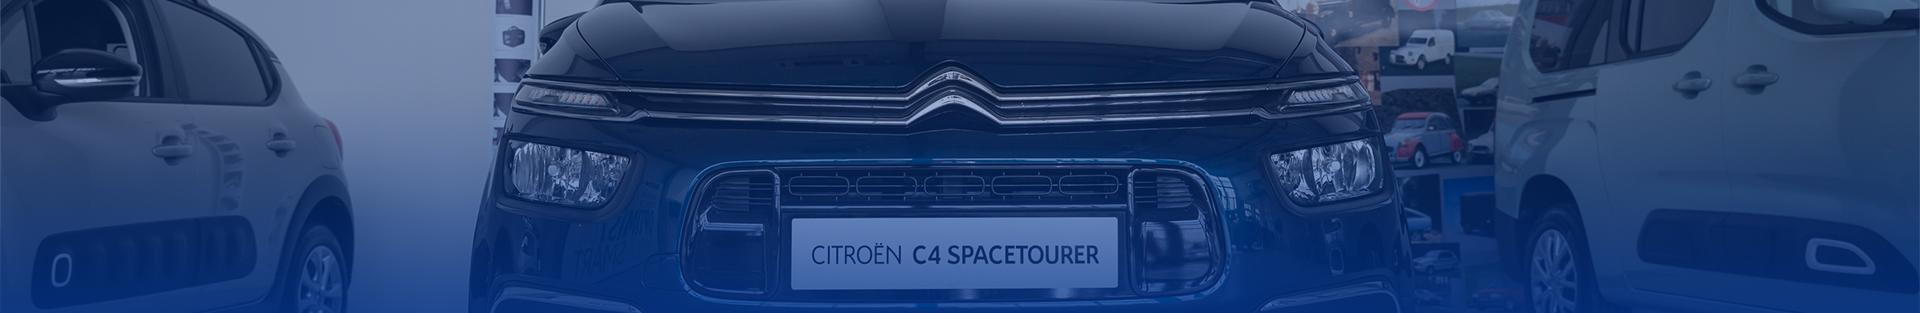 Citroën Ë-Spacetourervelkorysý a praktický vůz